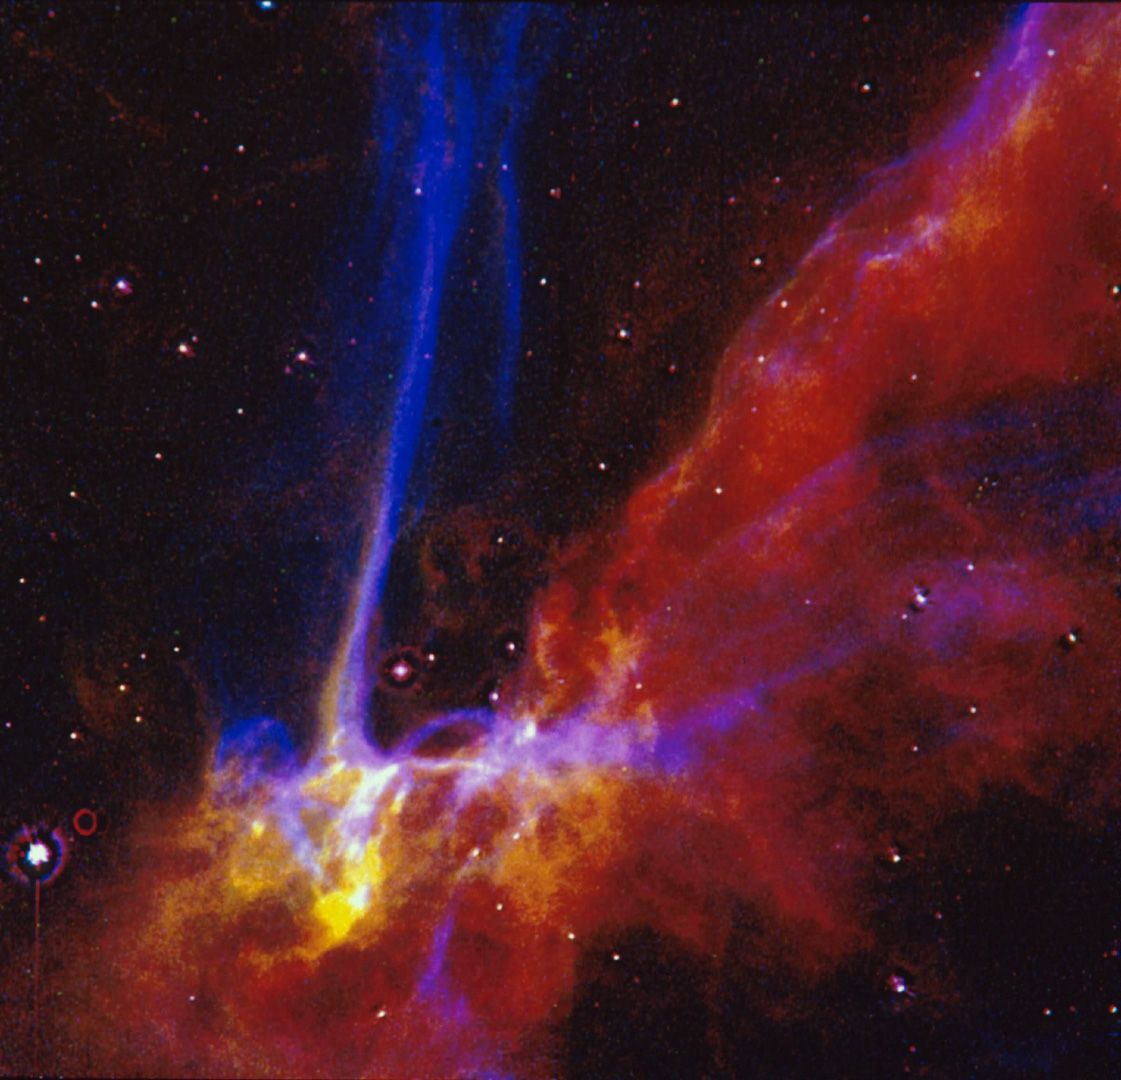 Dit beeld uit 1991 toont een klein deel van het Cygnus Loop supernovarestant De hier getoonde formatie markeert de buitenste rand van een groeiende explosieve golf van een kolossale stellaire explosie die ongeveer 15000 jaar geleden plaatsvond De ontploffing golft in wolken van interstellair gas waardoor het informatie over de samenstelling van het gas onthult